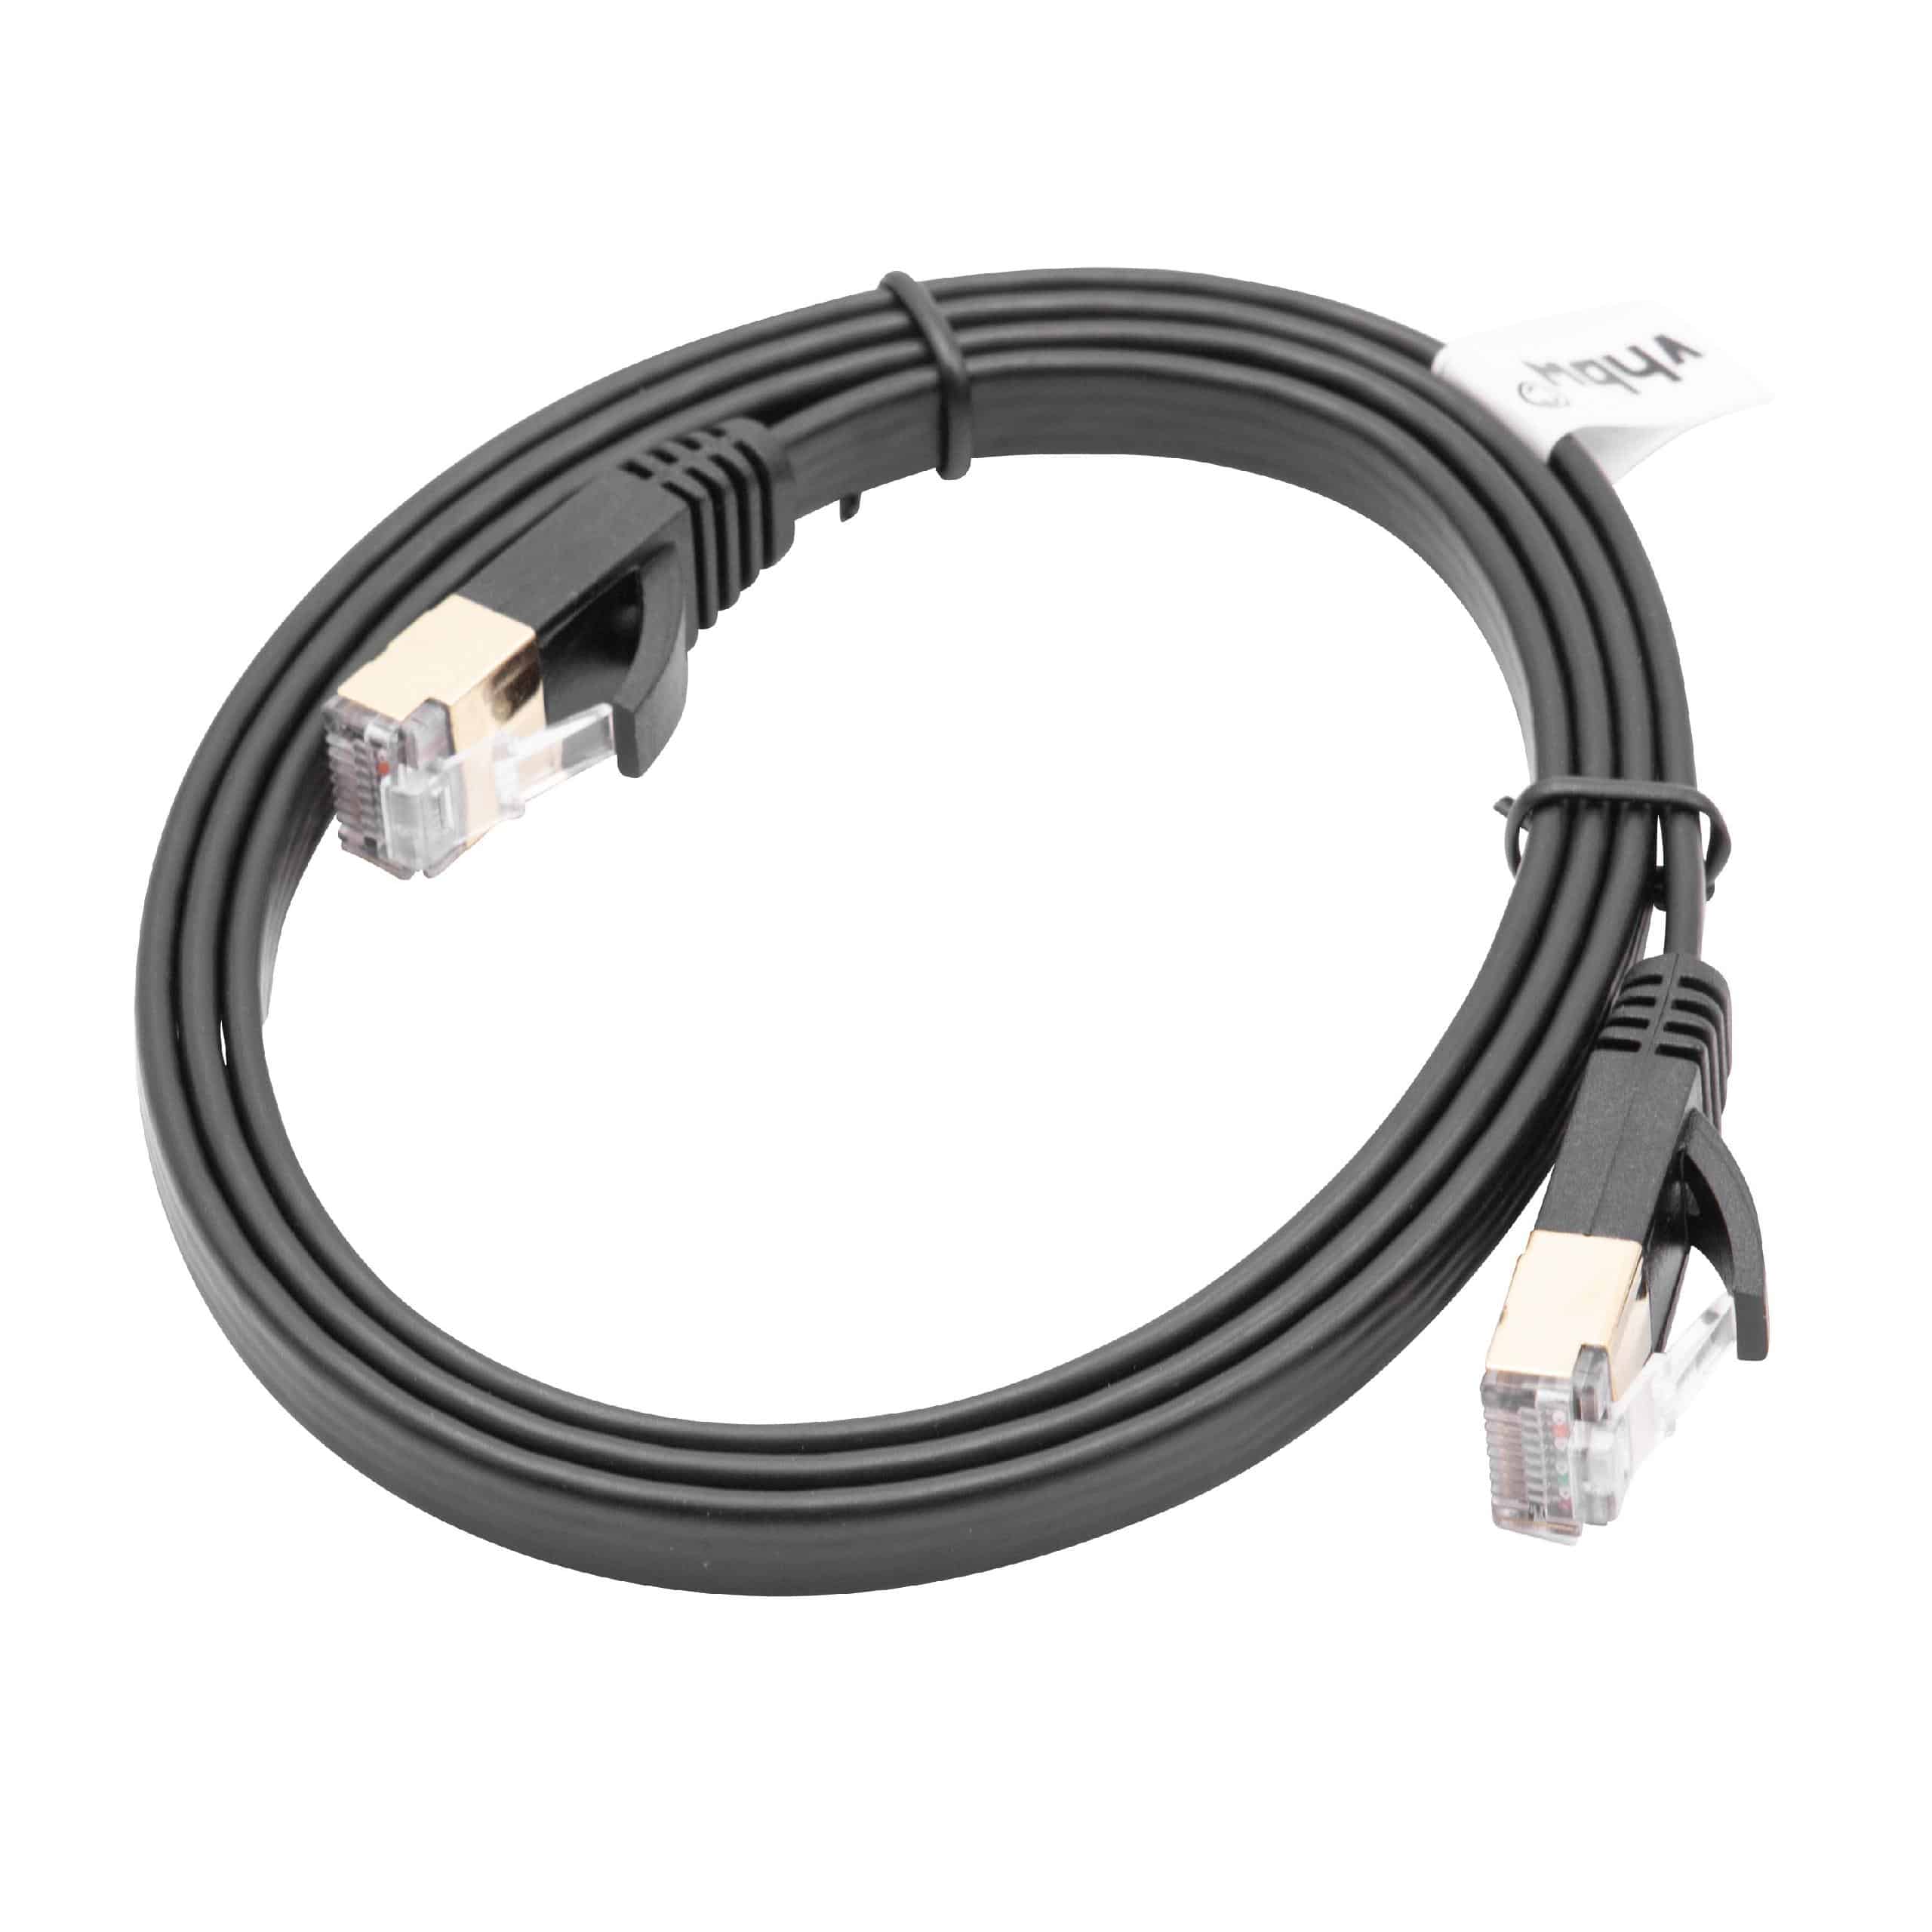 Cable de red de Ethernet, LAN, cable patch Cat7 1m negro cable plano de tendido